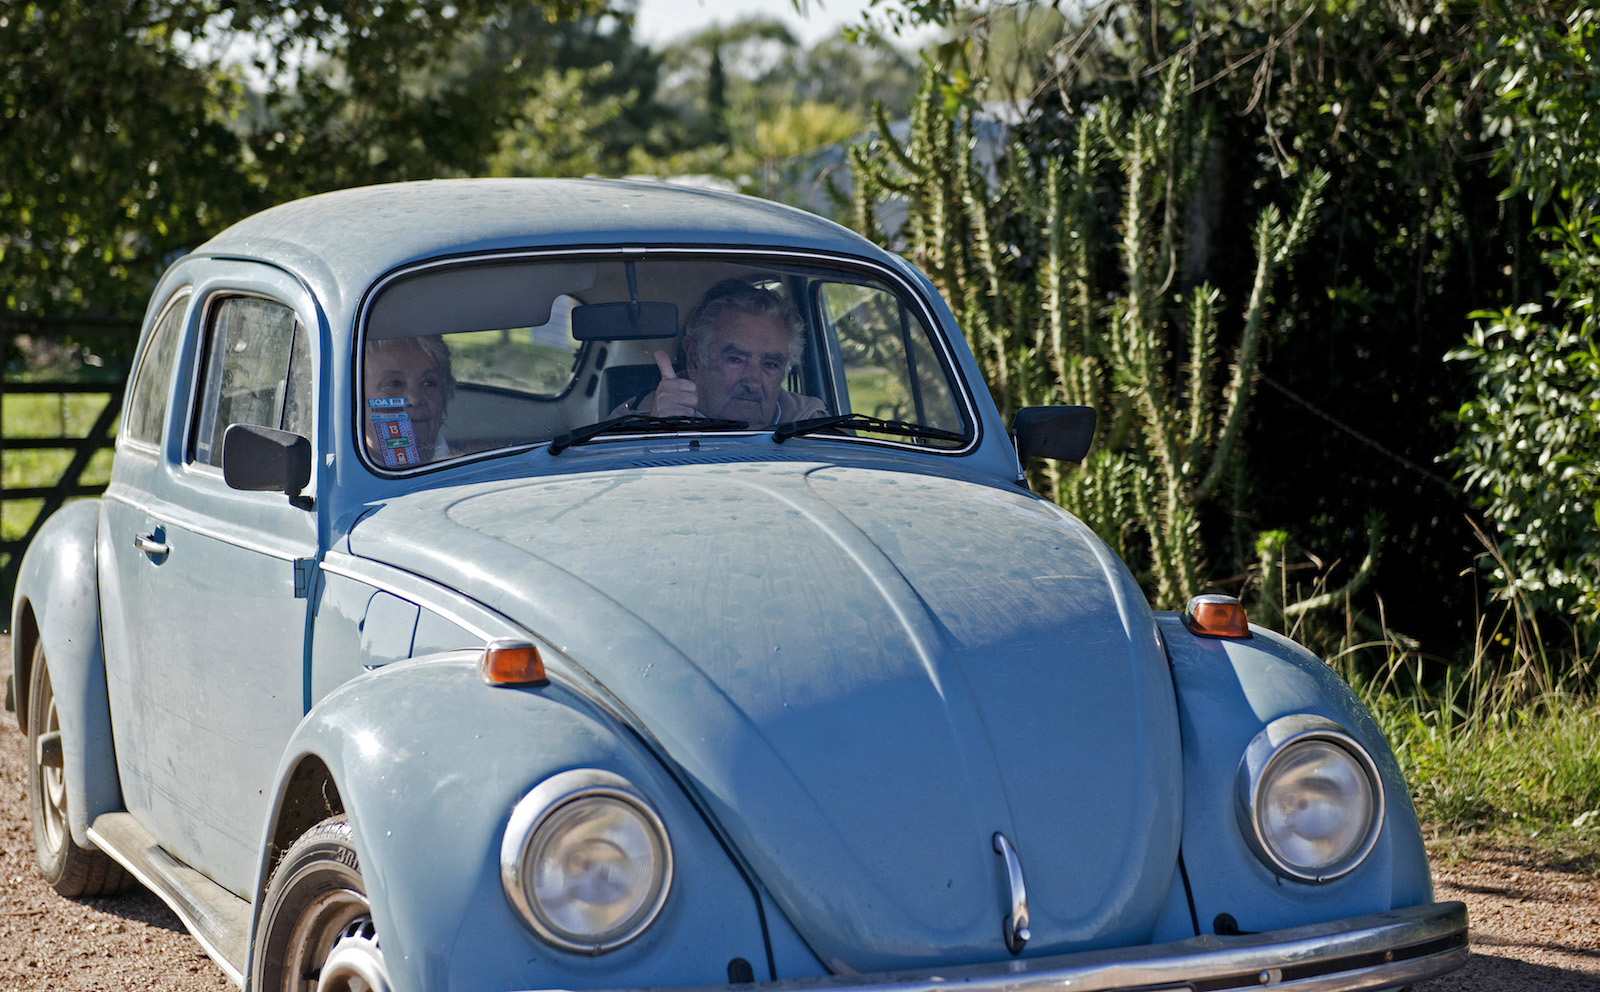 President of Uruguay, Jose Mujica with wife in his Volkswagen Beetle